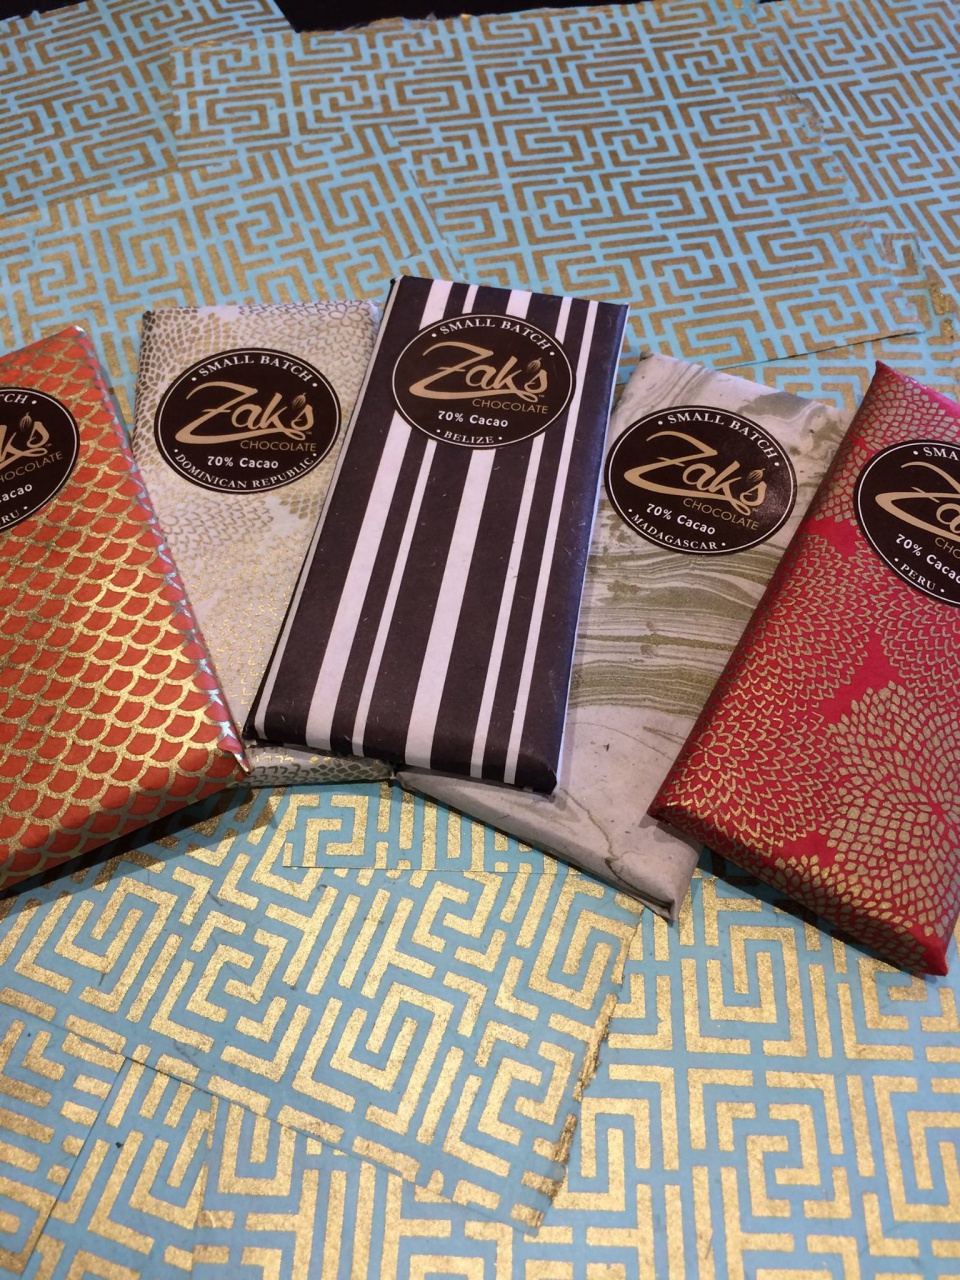 Les tablettes de Zak's chocolate©